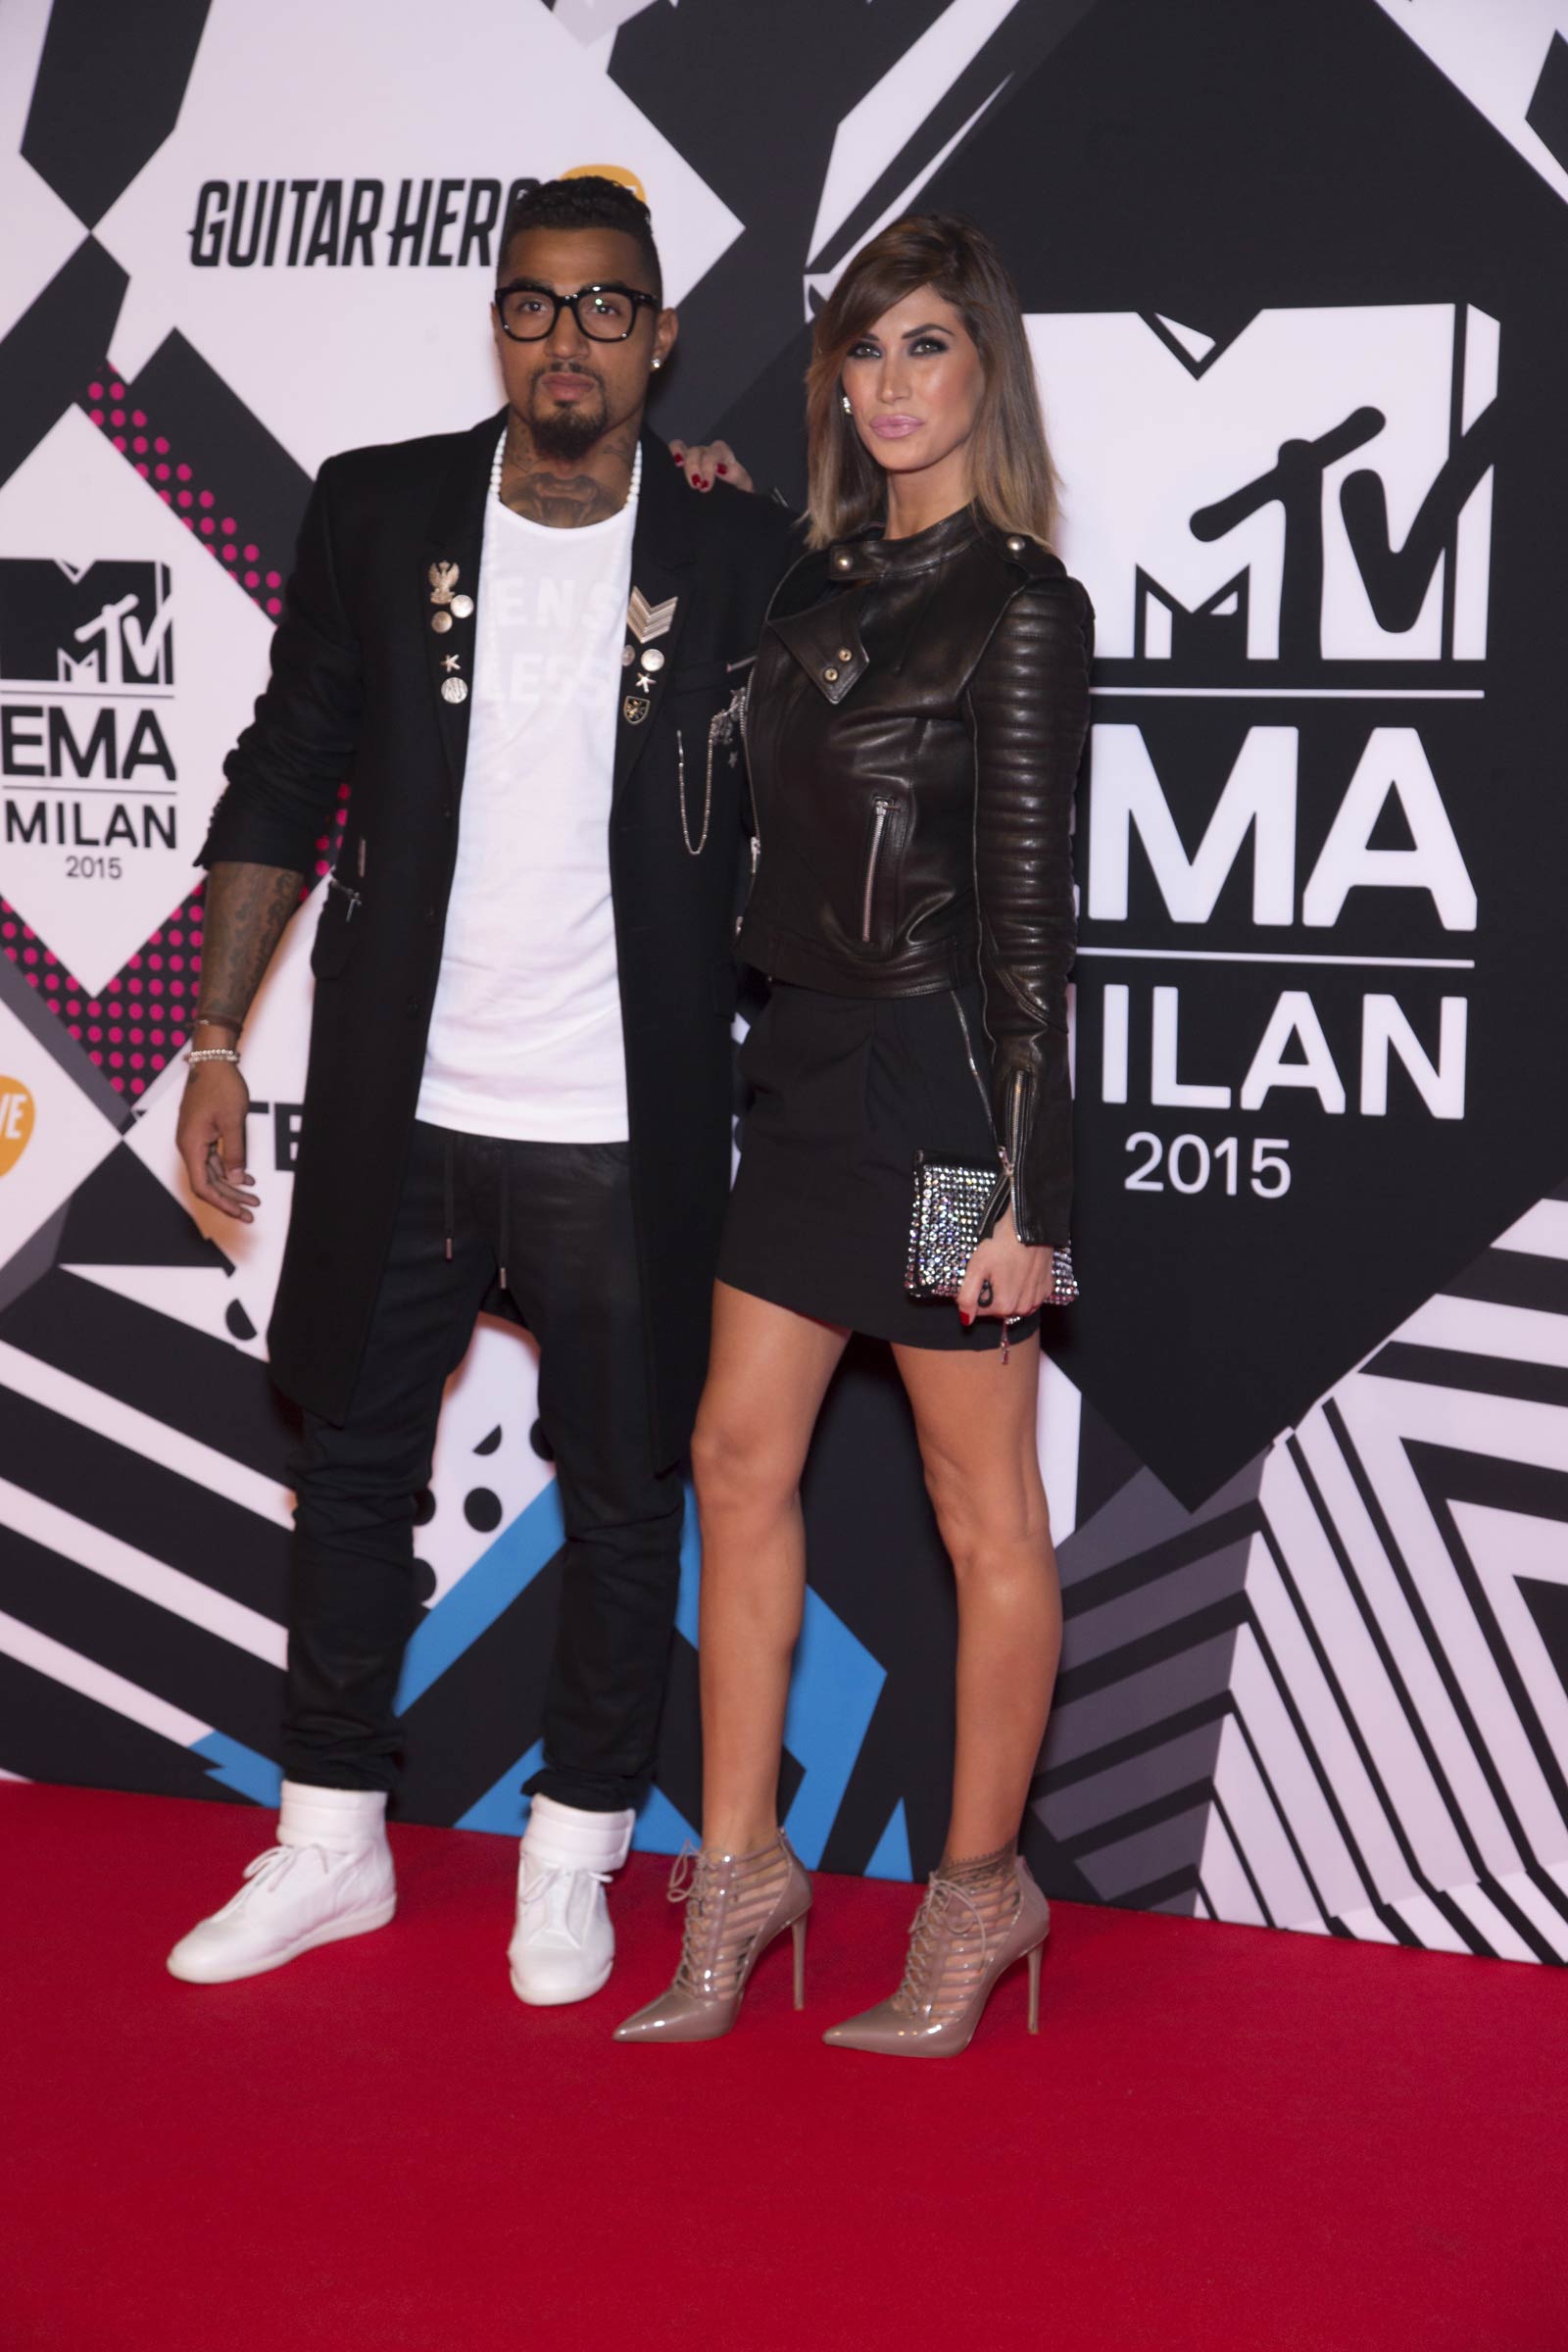 Melissa Satta attends MTV European Music Awards